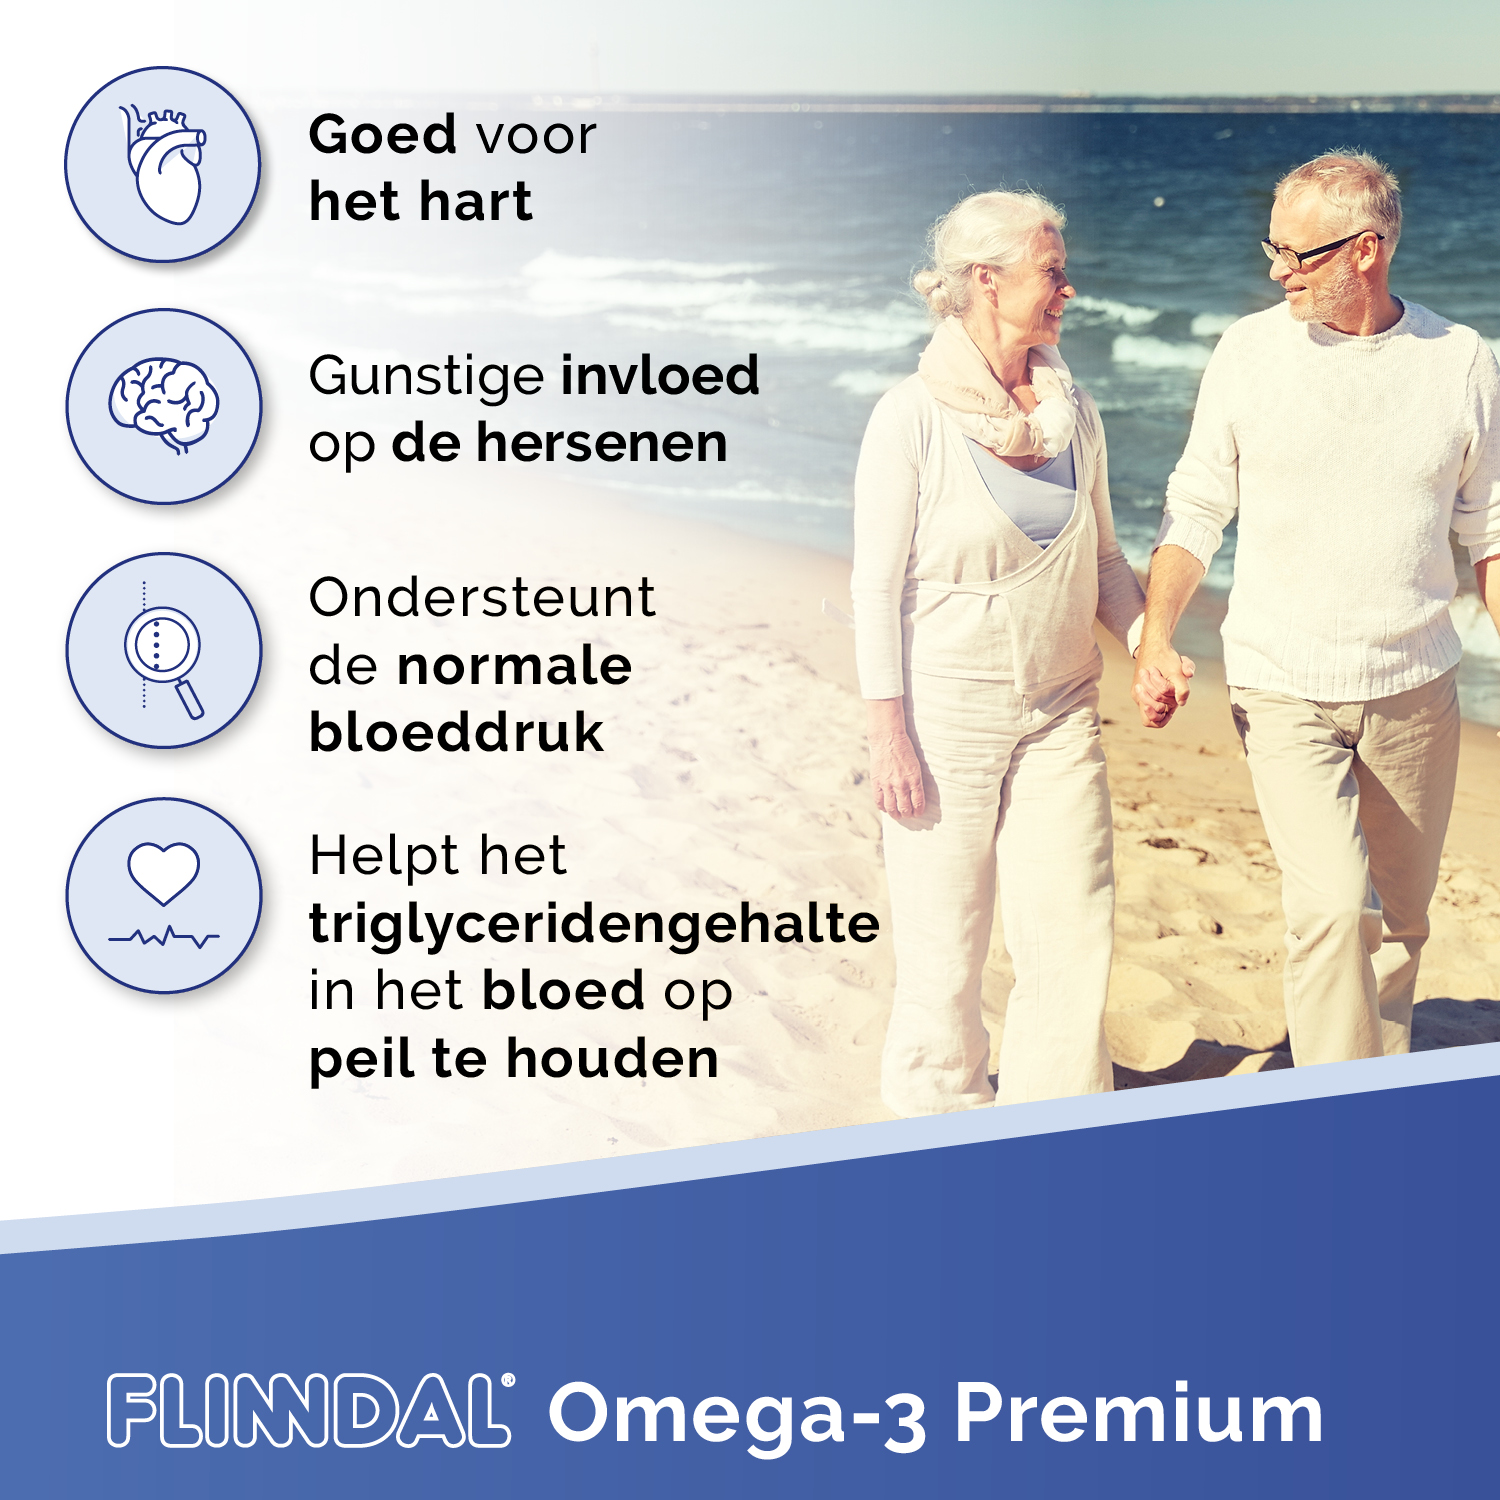 Flinndal Omega-3 Premium